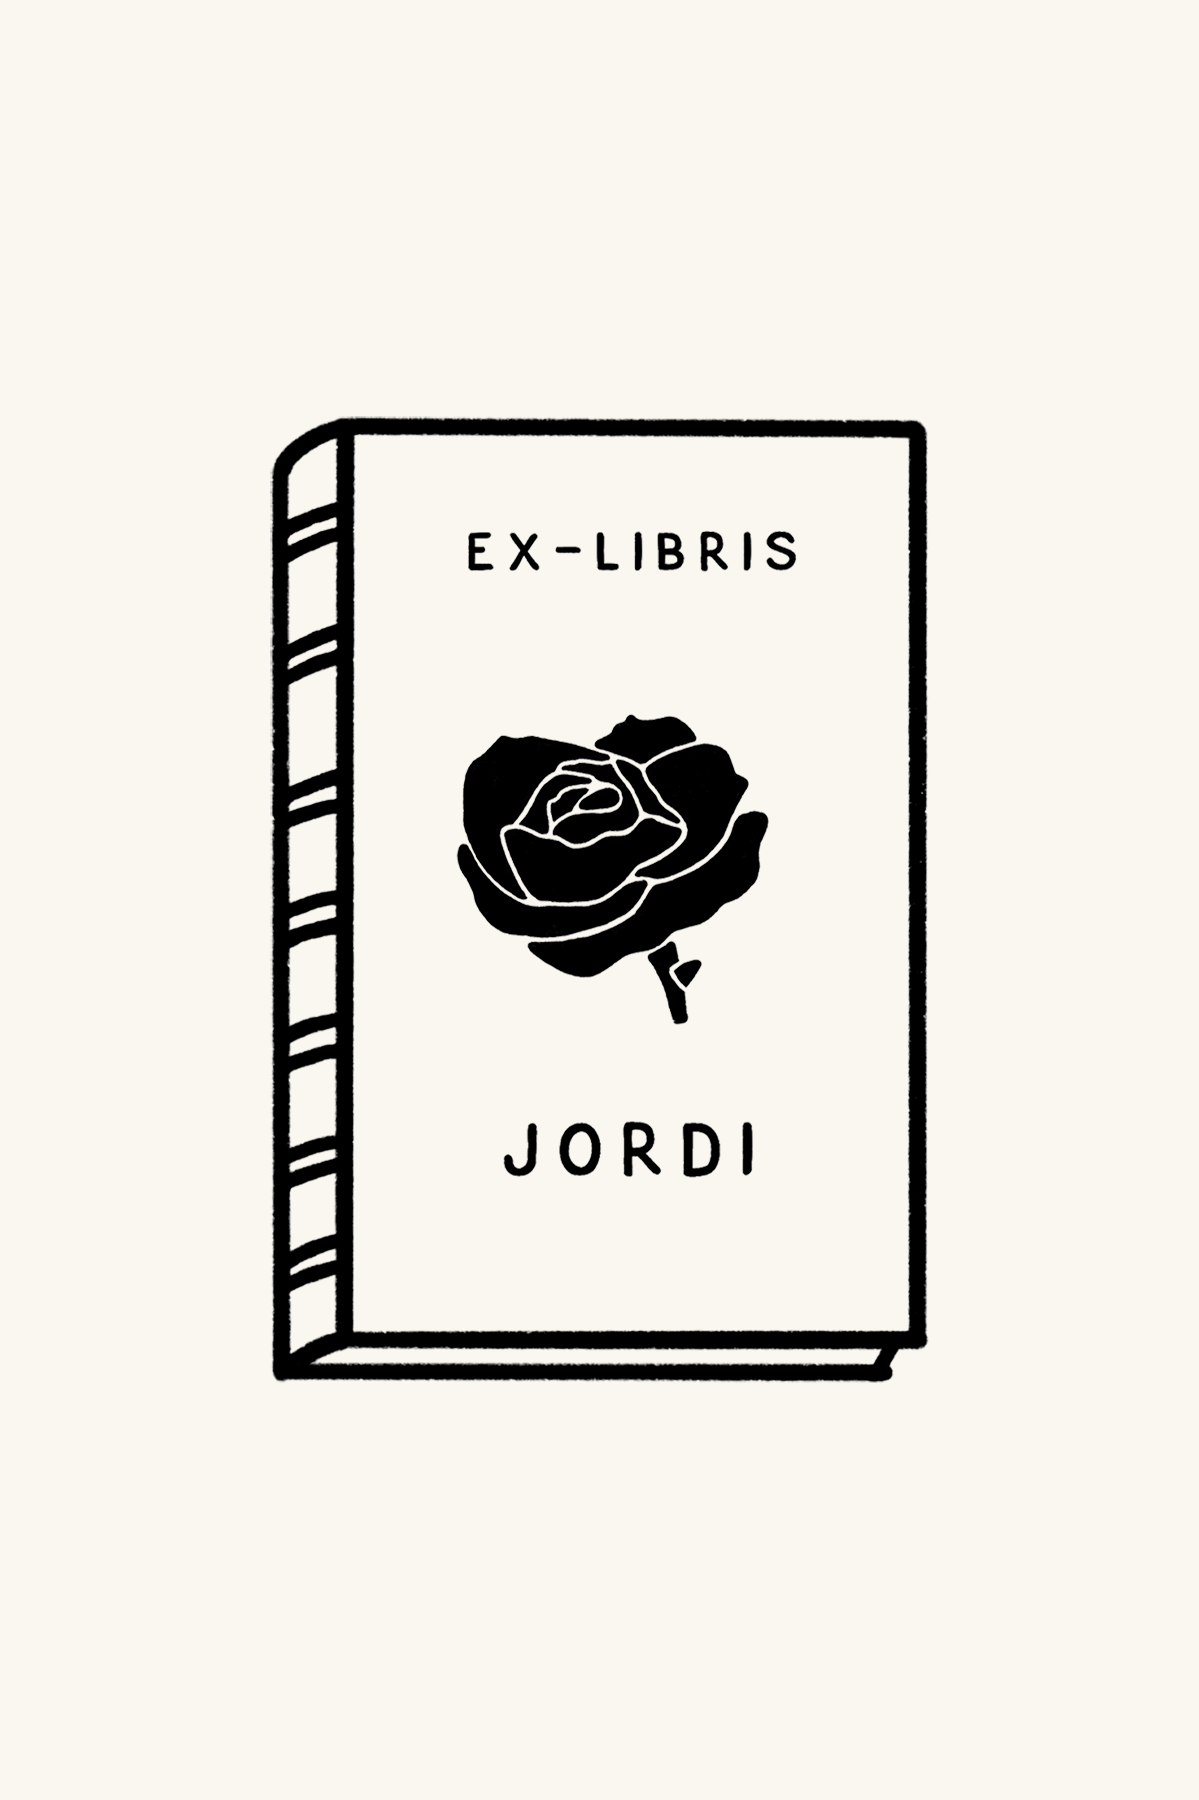 Ilustración de un libro con el título "Ex-libris Libro y rosa" y un diseño de rosa, rotulado "Sant Jordi" en la portada. El libro presenta una apariencia sencilla y elegante con la marca Les Tampons de Roser visible.